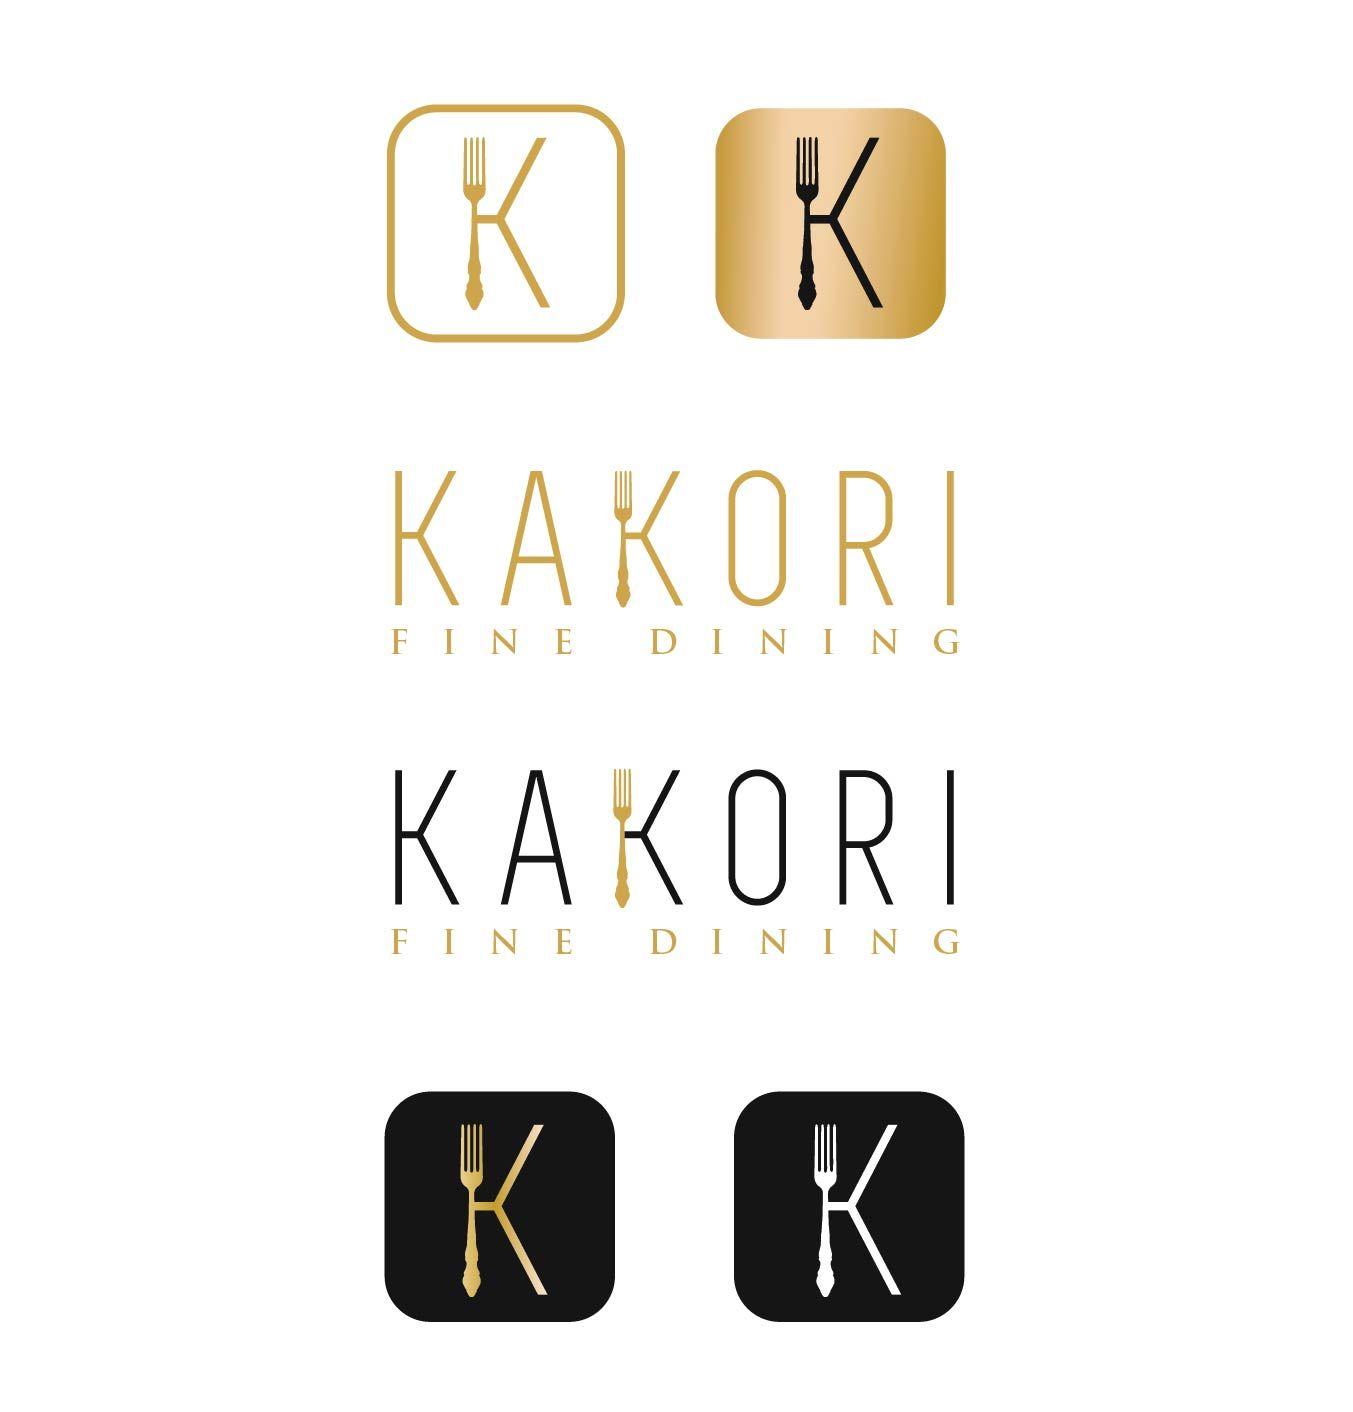 K K Restaurant Logo - Restaurant Logo Design for KAKORI by sunmoon. Design